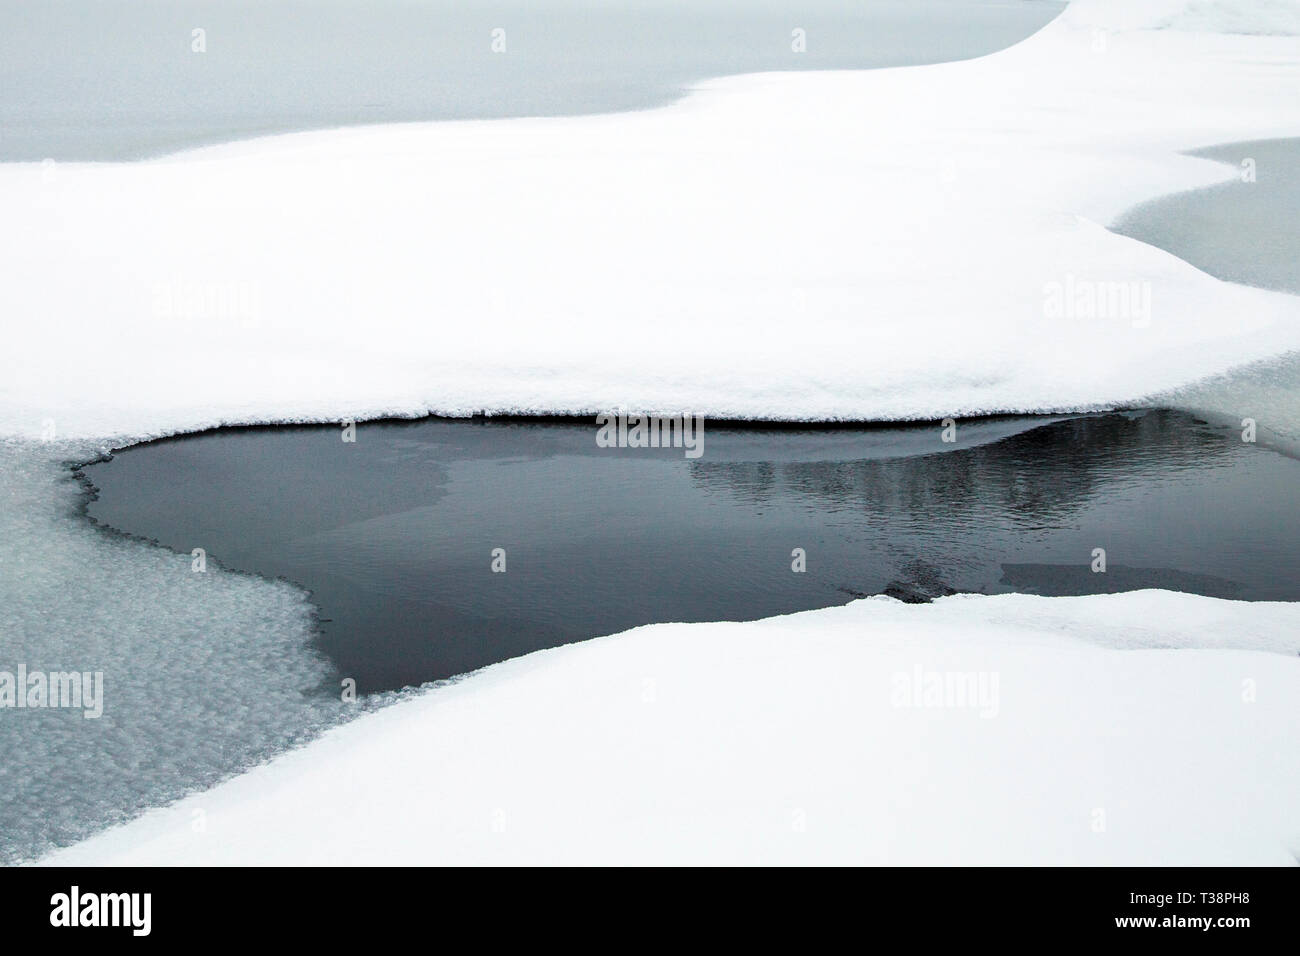 La neige et l'eau gelée résumé fond autour de l'Islande, Glacier Solheimajokull Banque D'Images